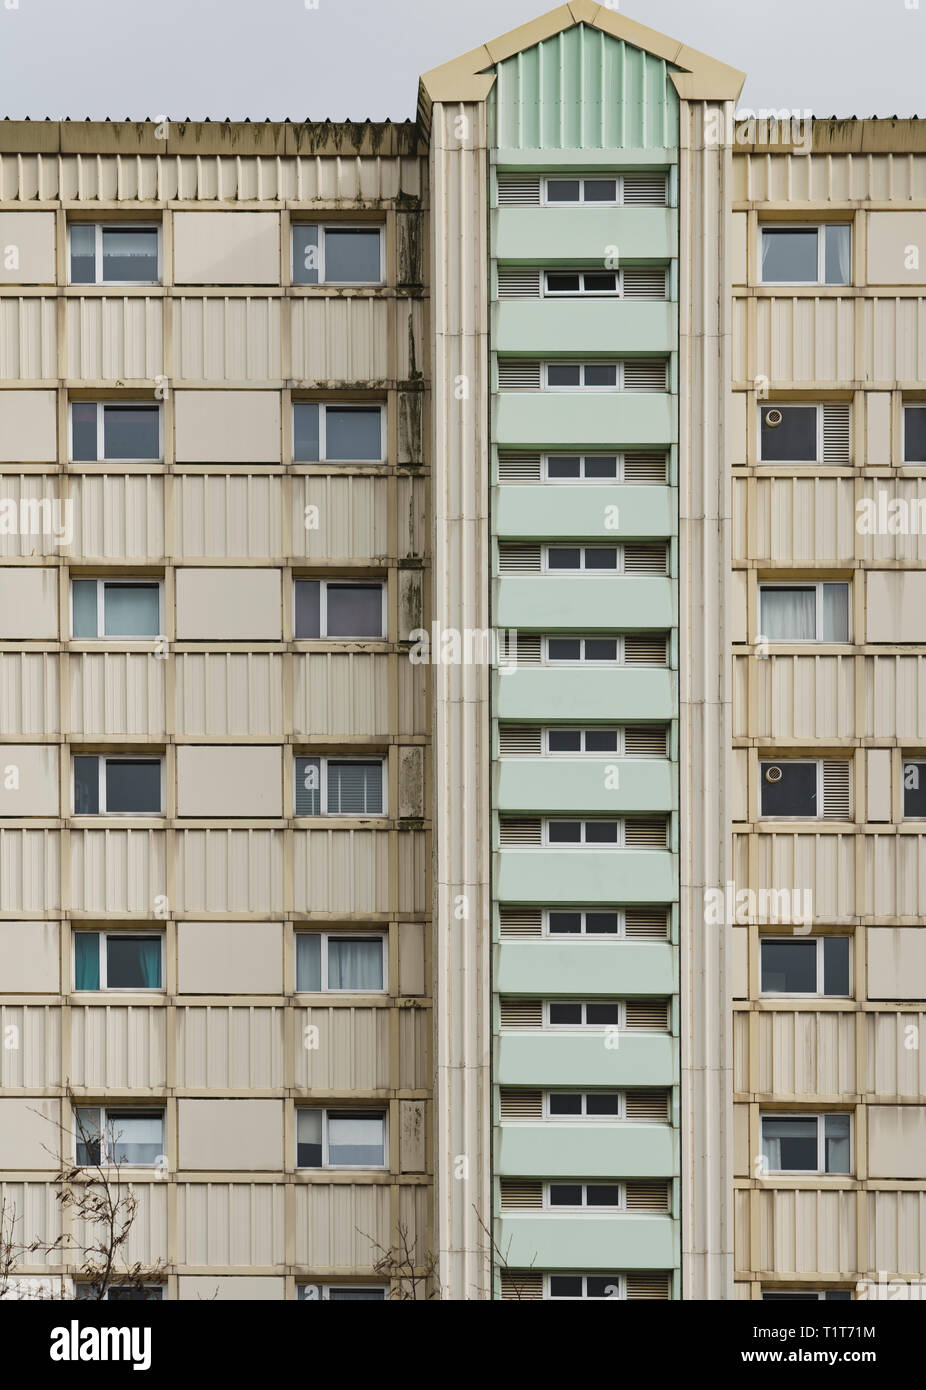 Detalle de gran altura de apartamentos en bloque del Consejo Wester Hailes, Edimburgo, Escocia, Reino Unido Foto de stock